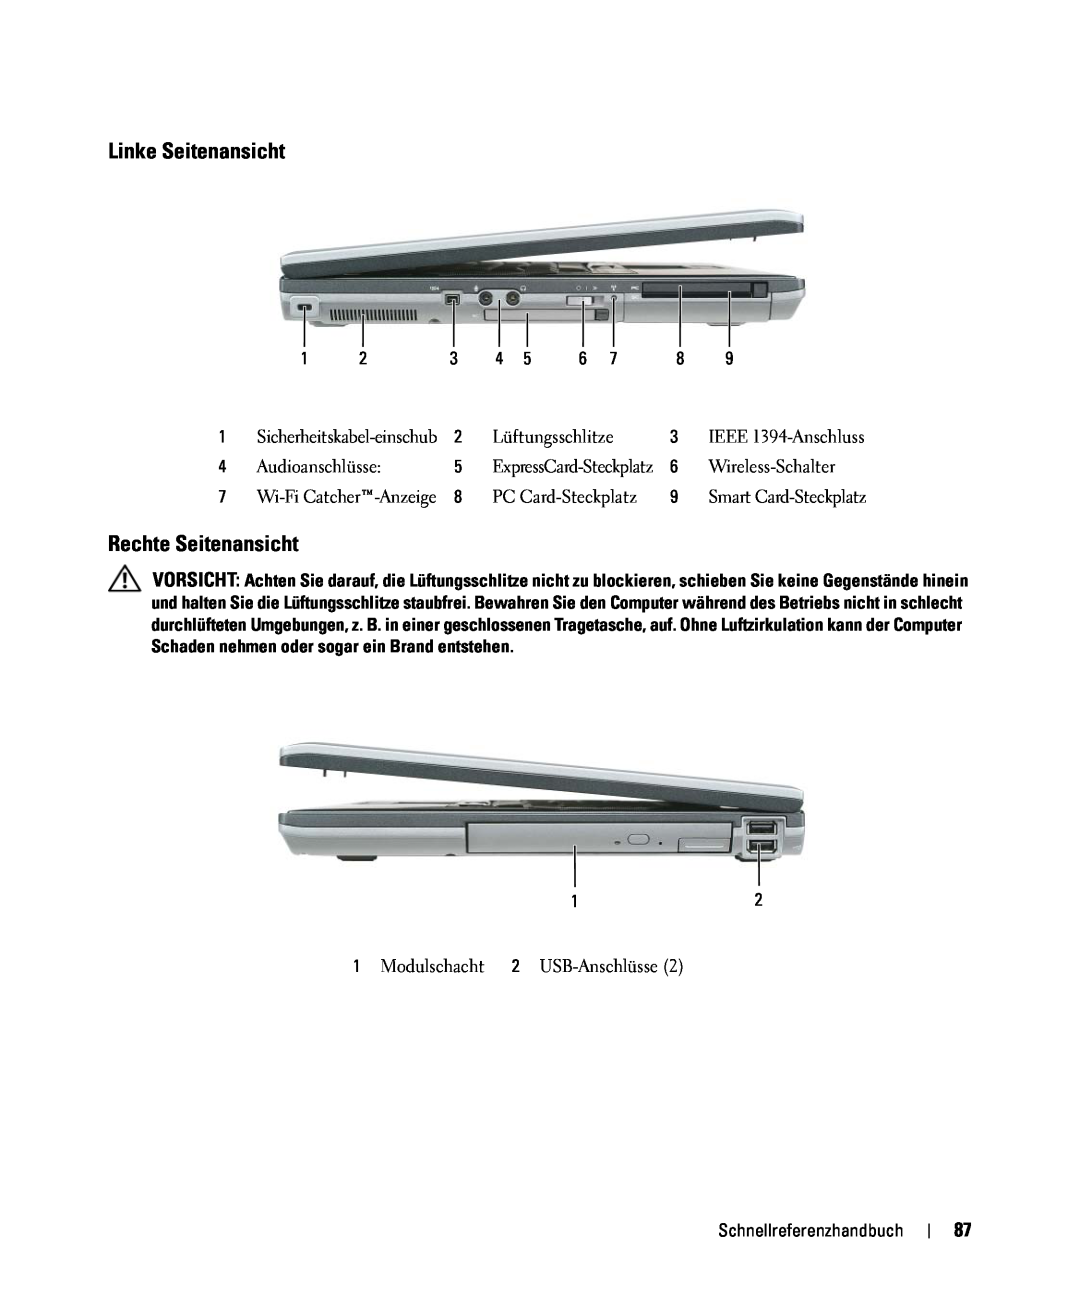 Dell GU806 manual Linke Seitenansicht, Rechte Seitenansicht, Schnellreferenzhandbuch, ExpressCard-Steckplatz 